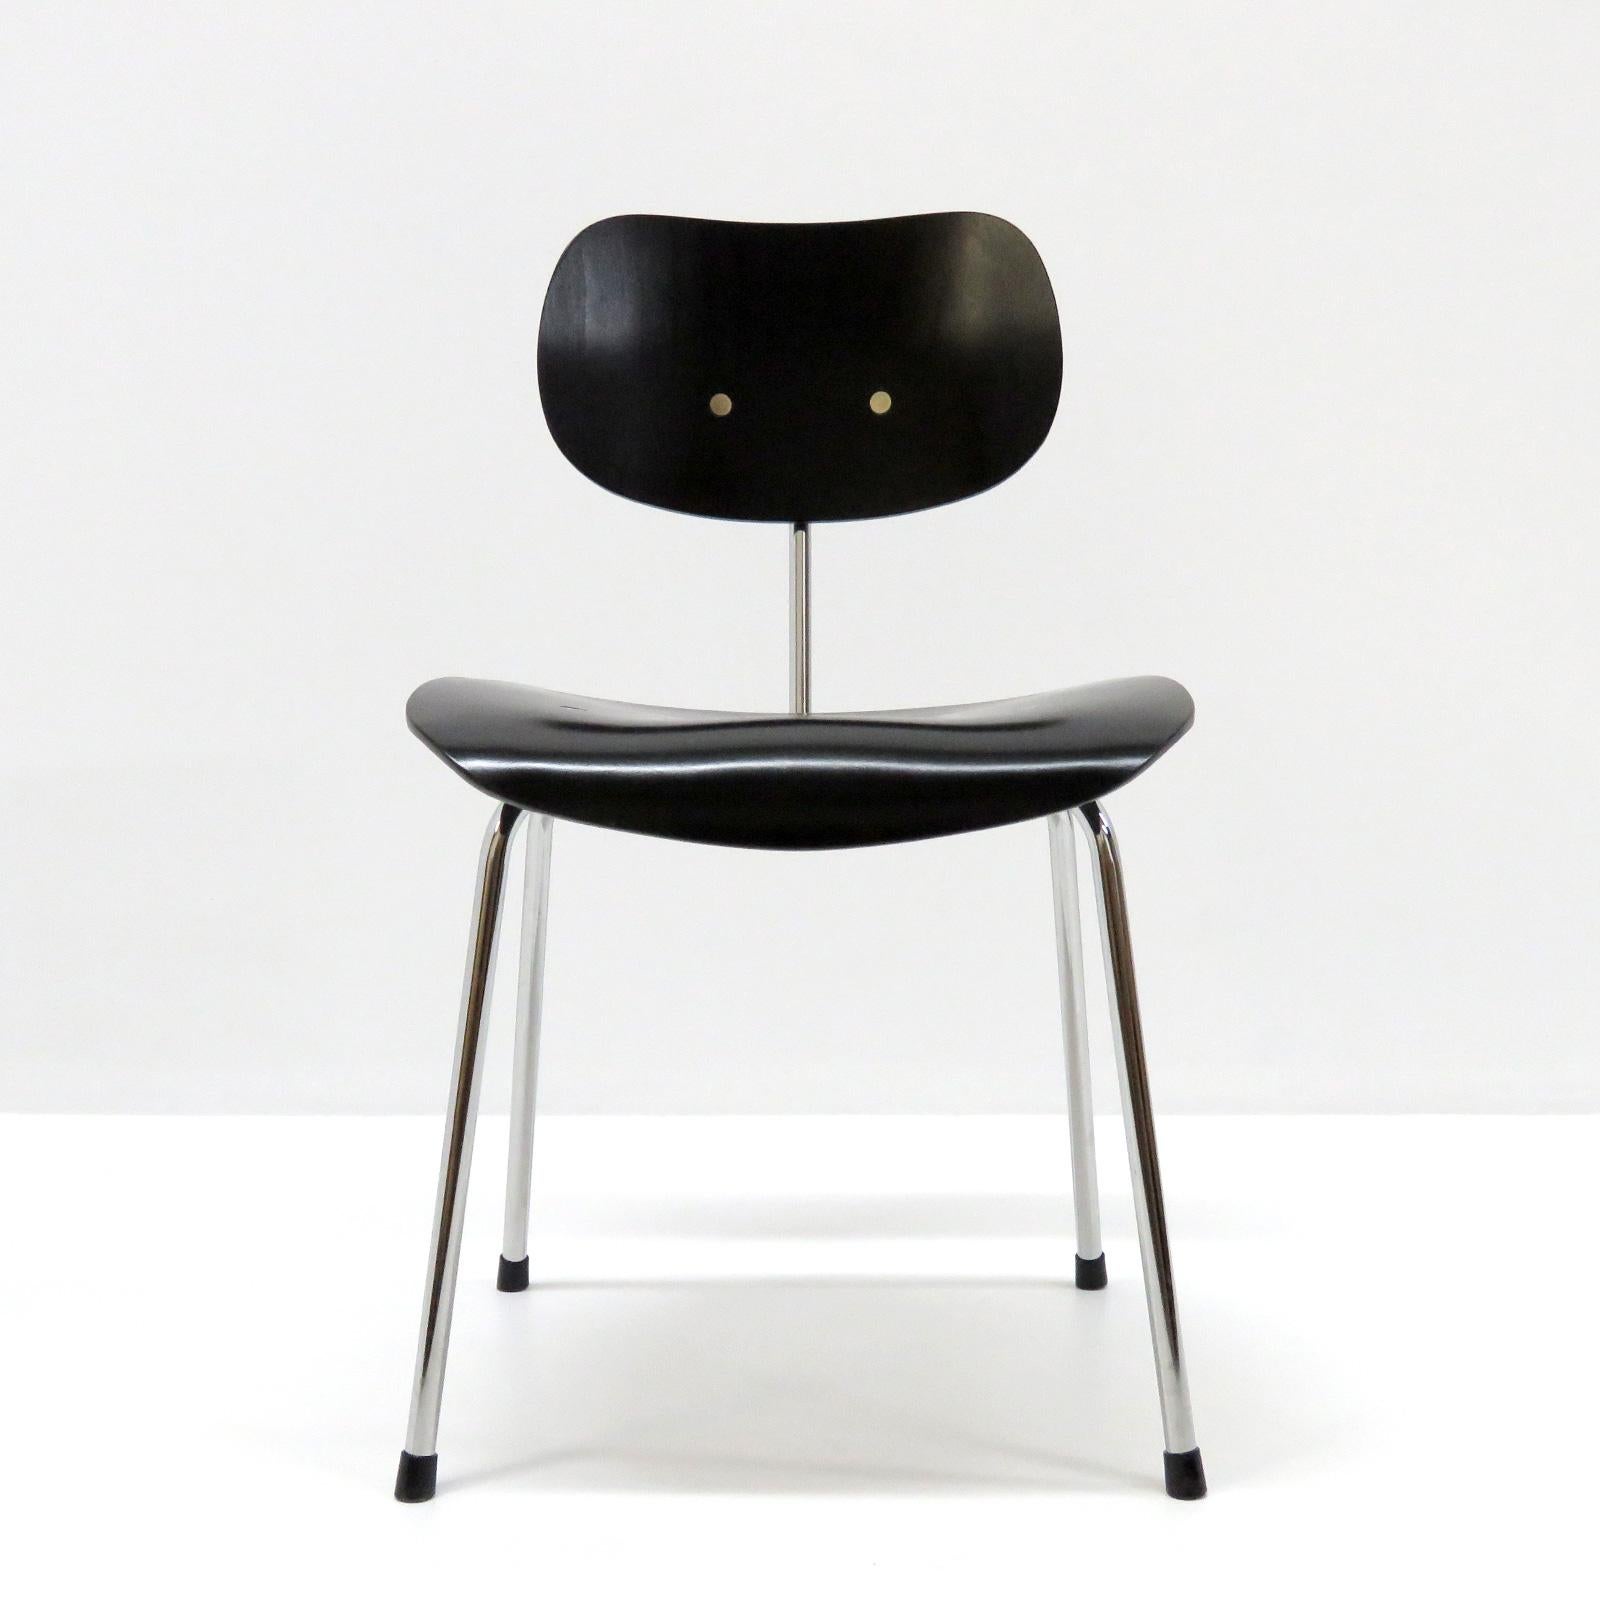 Toller Satz von vier Esszimmerstühlen Modell SE 68 von Egon Eiermann für Wilde & Spieth, Stahlrohr, verchromt, mit schwarz lackierten, ergonomisch geformten Holzsitzen.